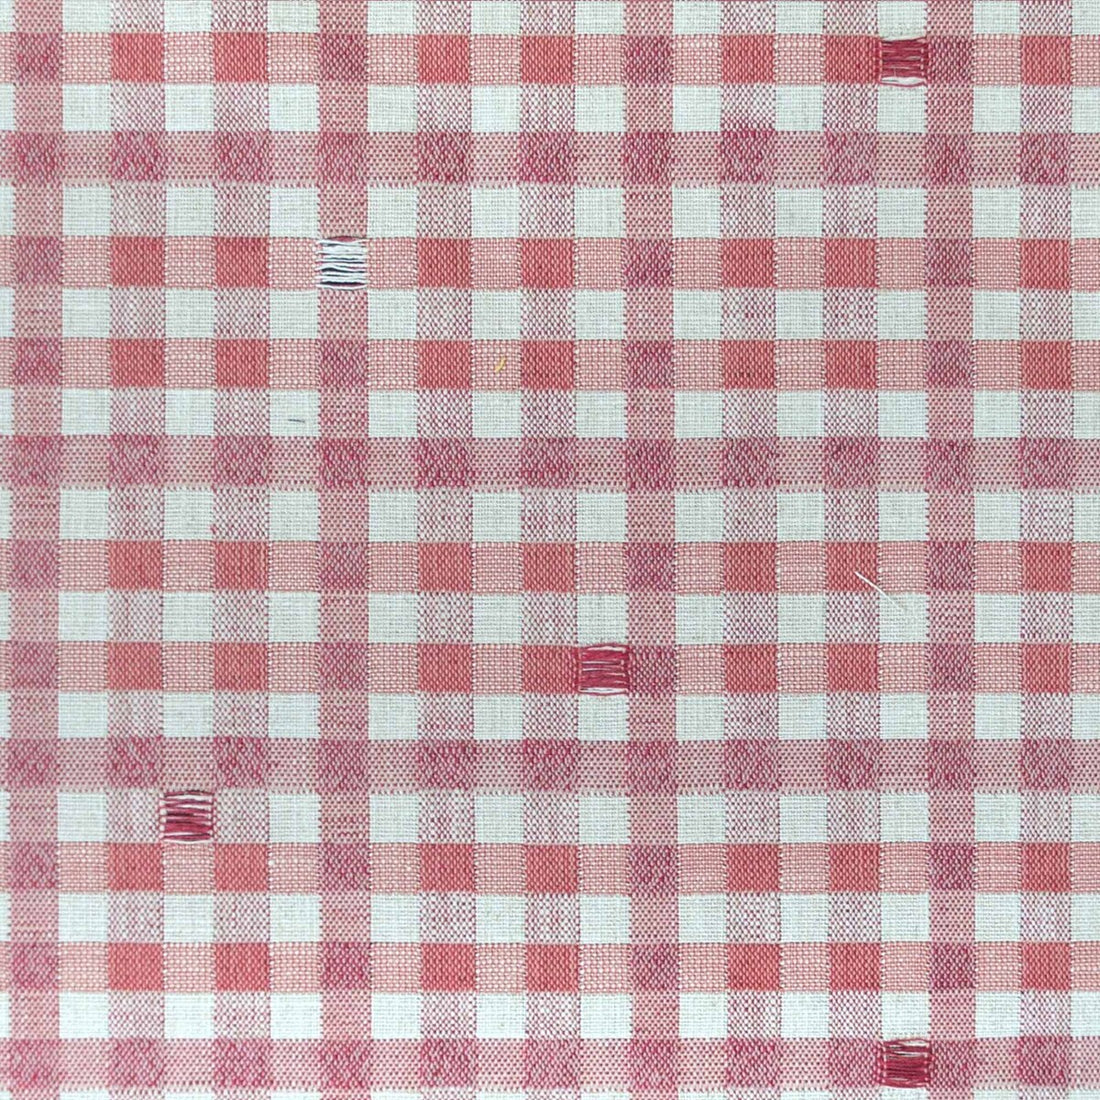 Trajano fabric in rosa color - pattern LCT1130.003.0 - by Gaston y Daniela in the Lorenzo Castillo IX Hesperia collection